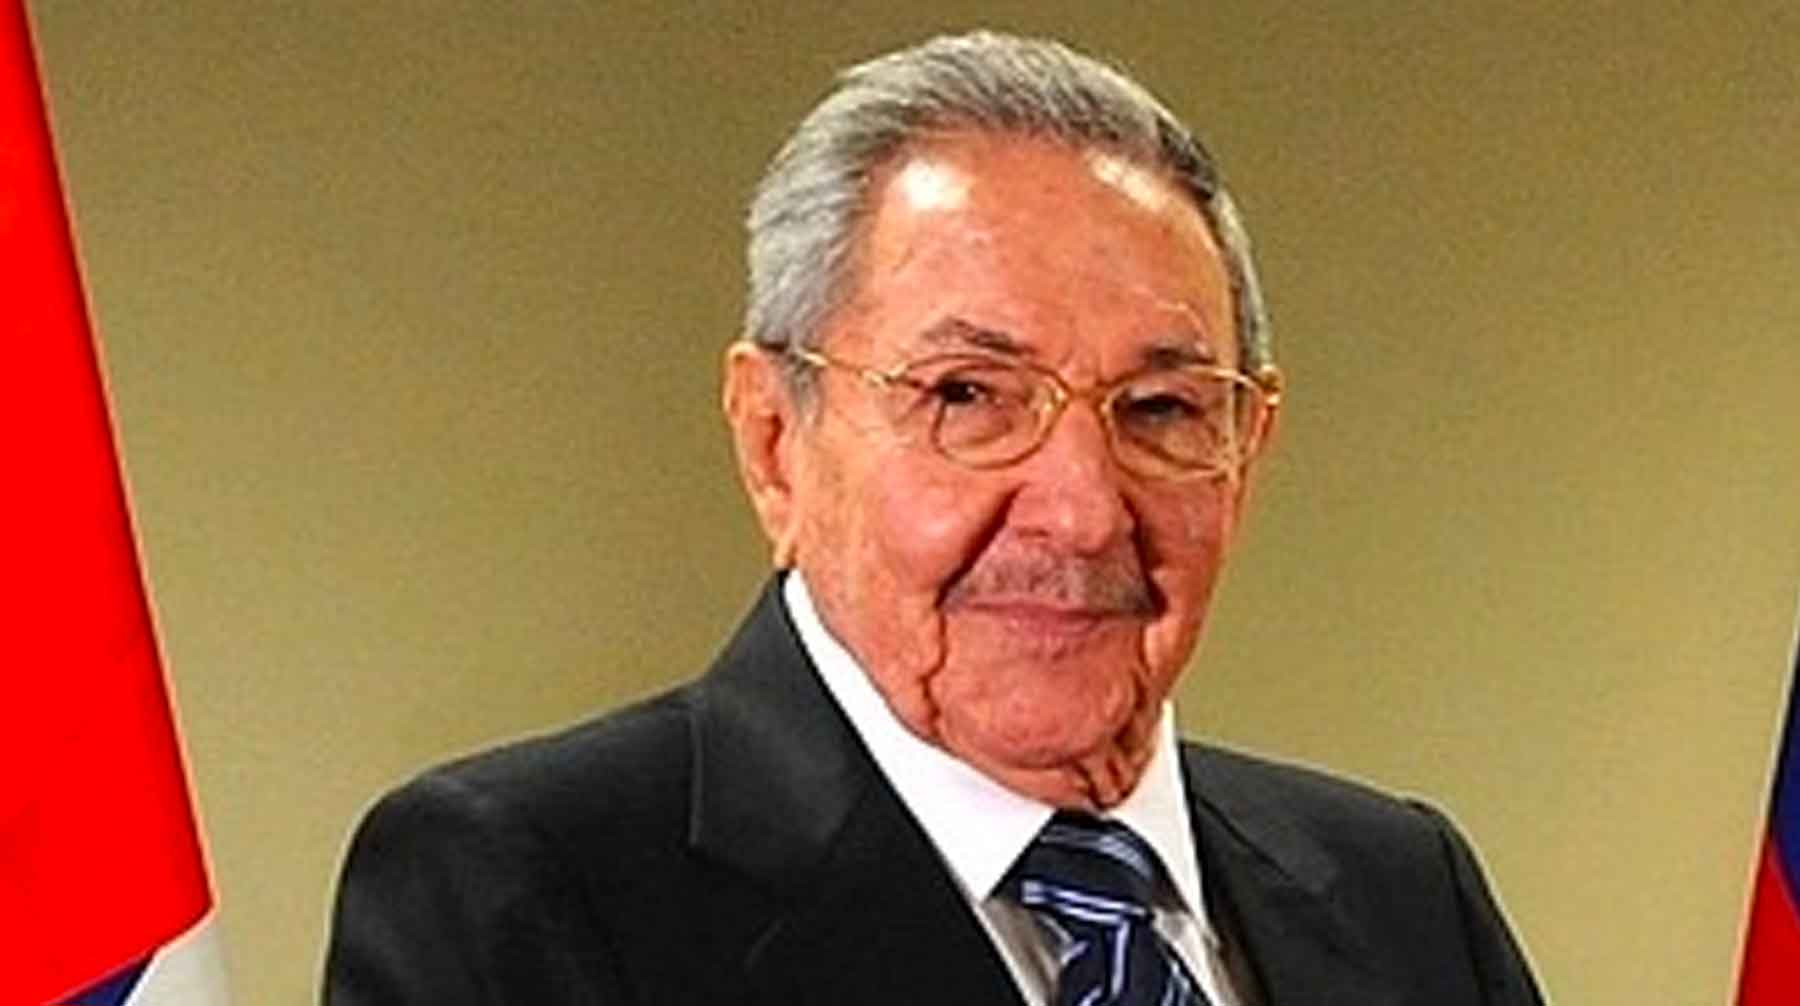 Госсекретарь Майк Помпео заявил, что власти Кубы нарушают права человека и поддерживают президента Венесуэлы Николаса Мадуро Рауль Кастро